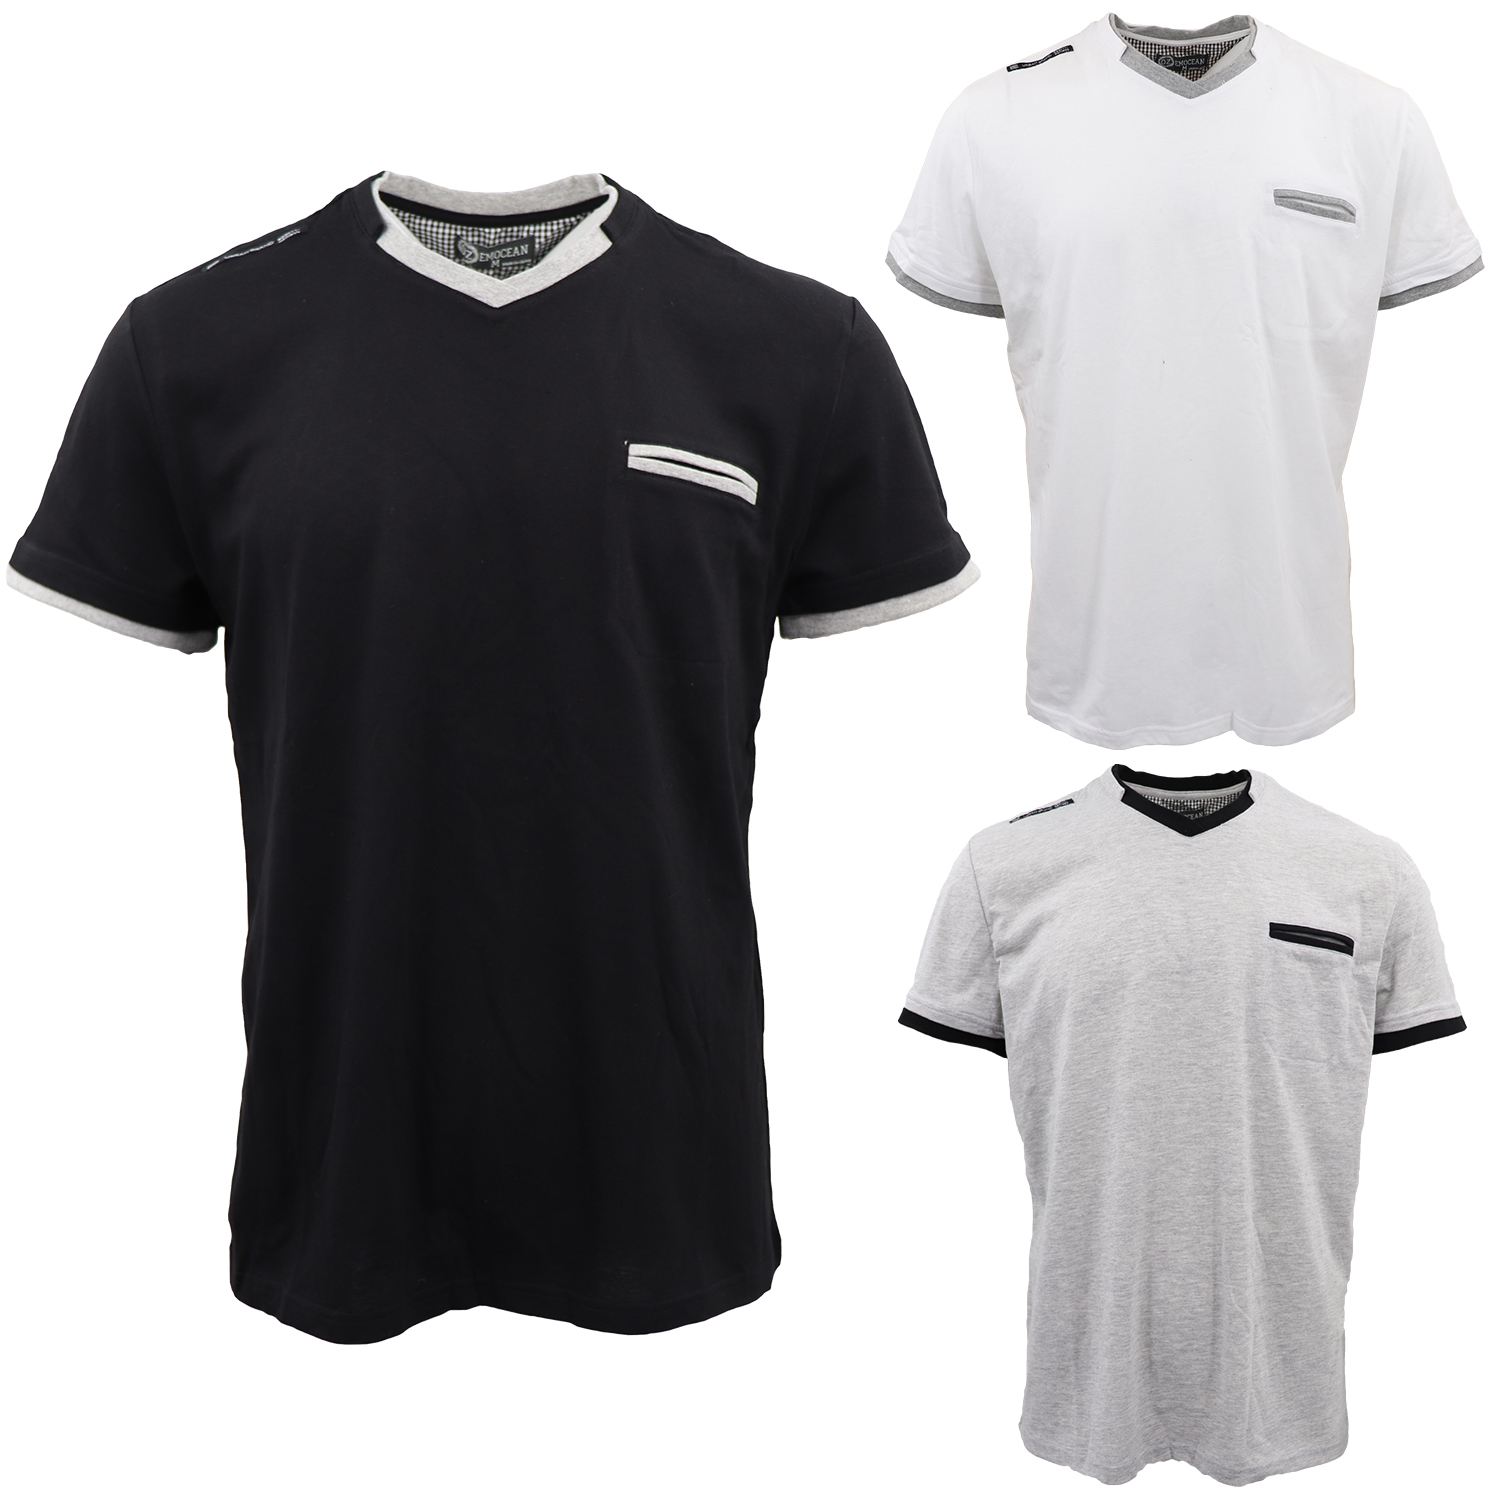 Men's 100% Cotton Short Sleeve T-Shirt Retro Ringer Style Plain Tee Tops Pocket - Zmart Australia